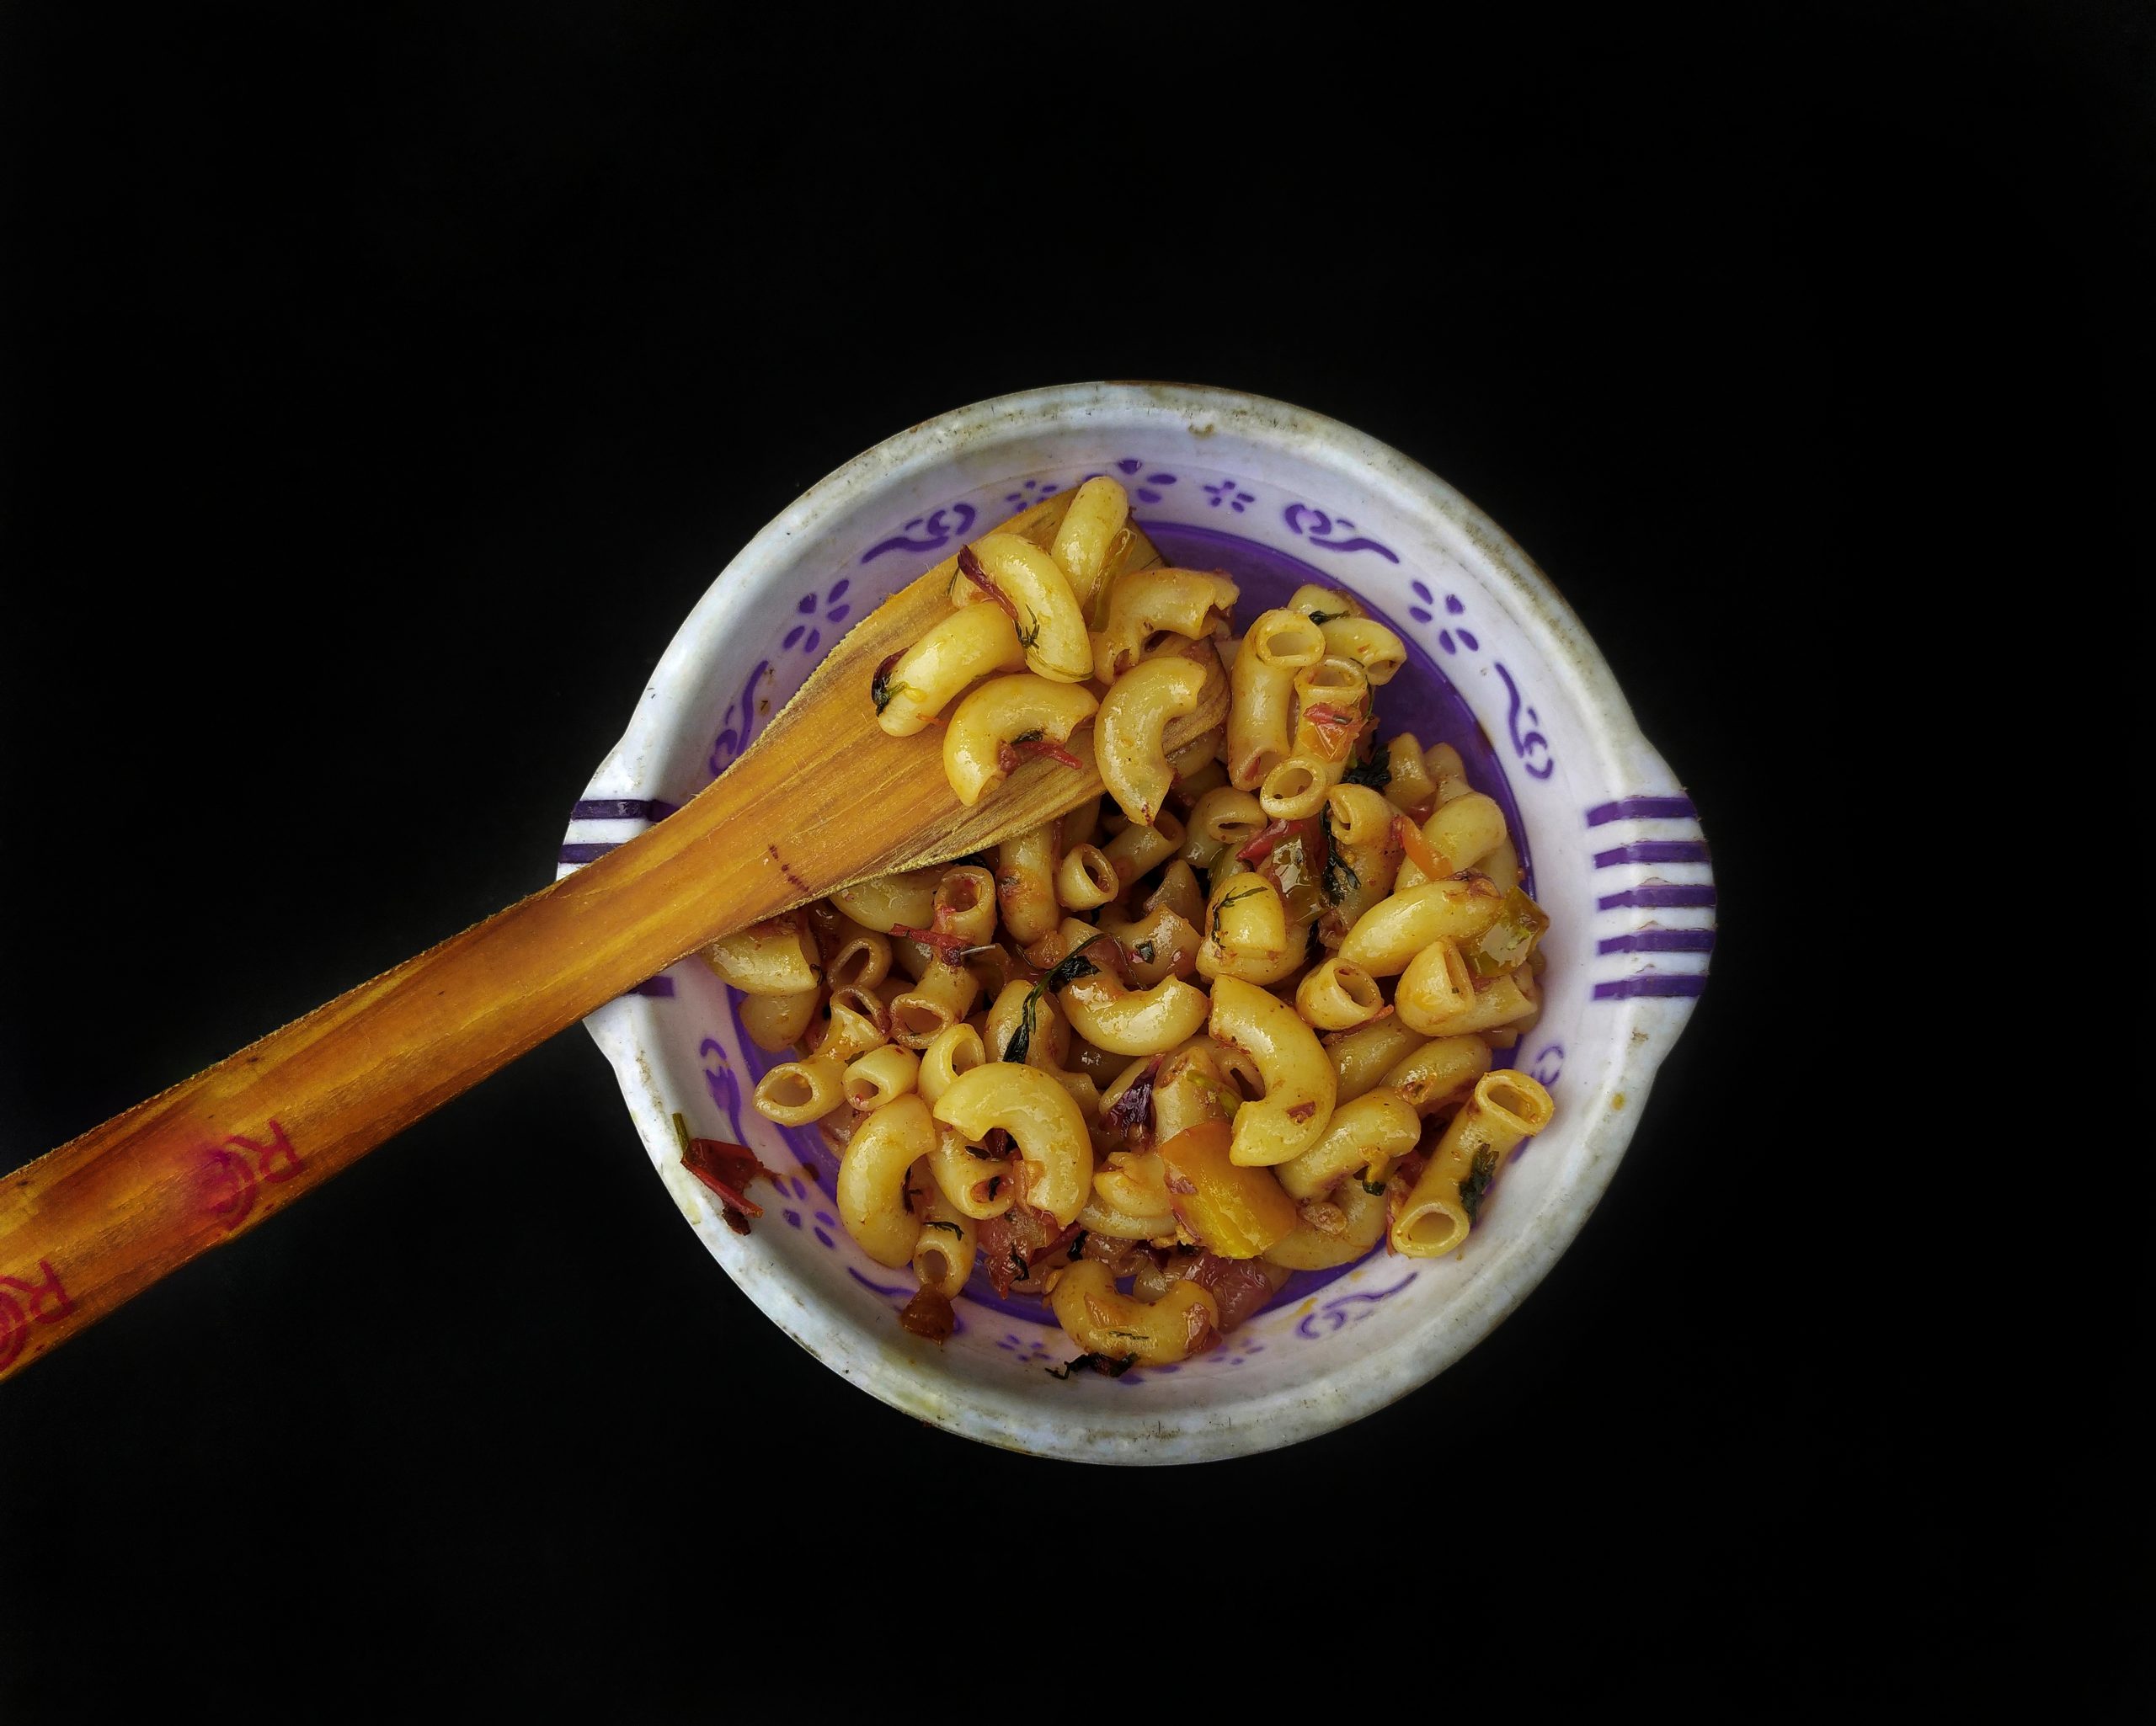 Cooked macaroni pasta bowl